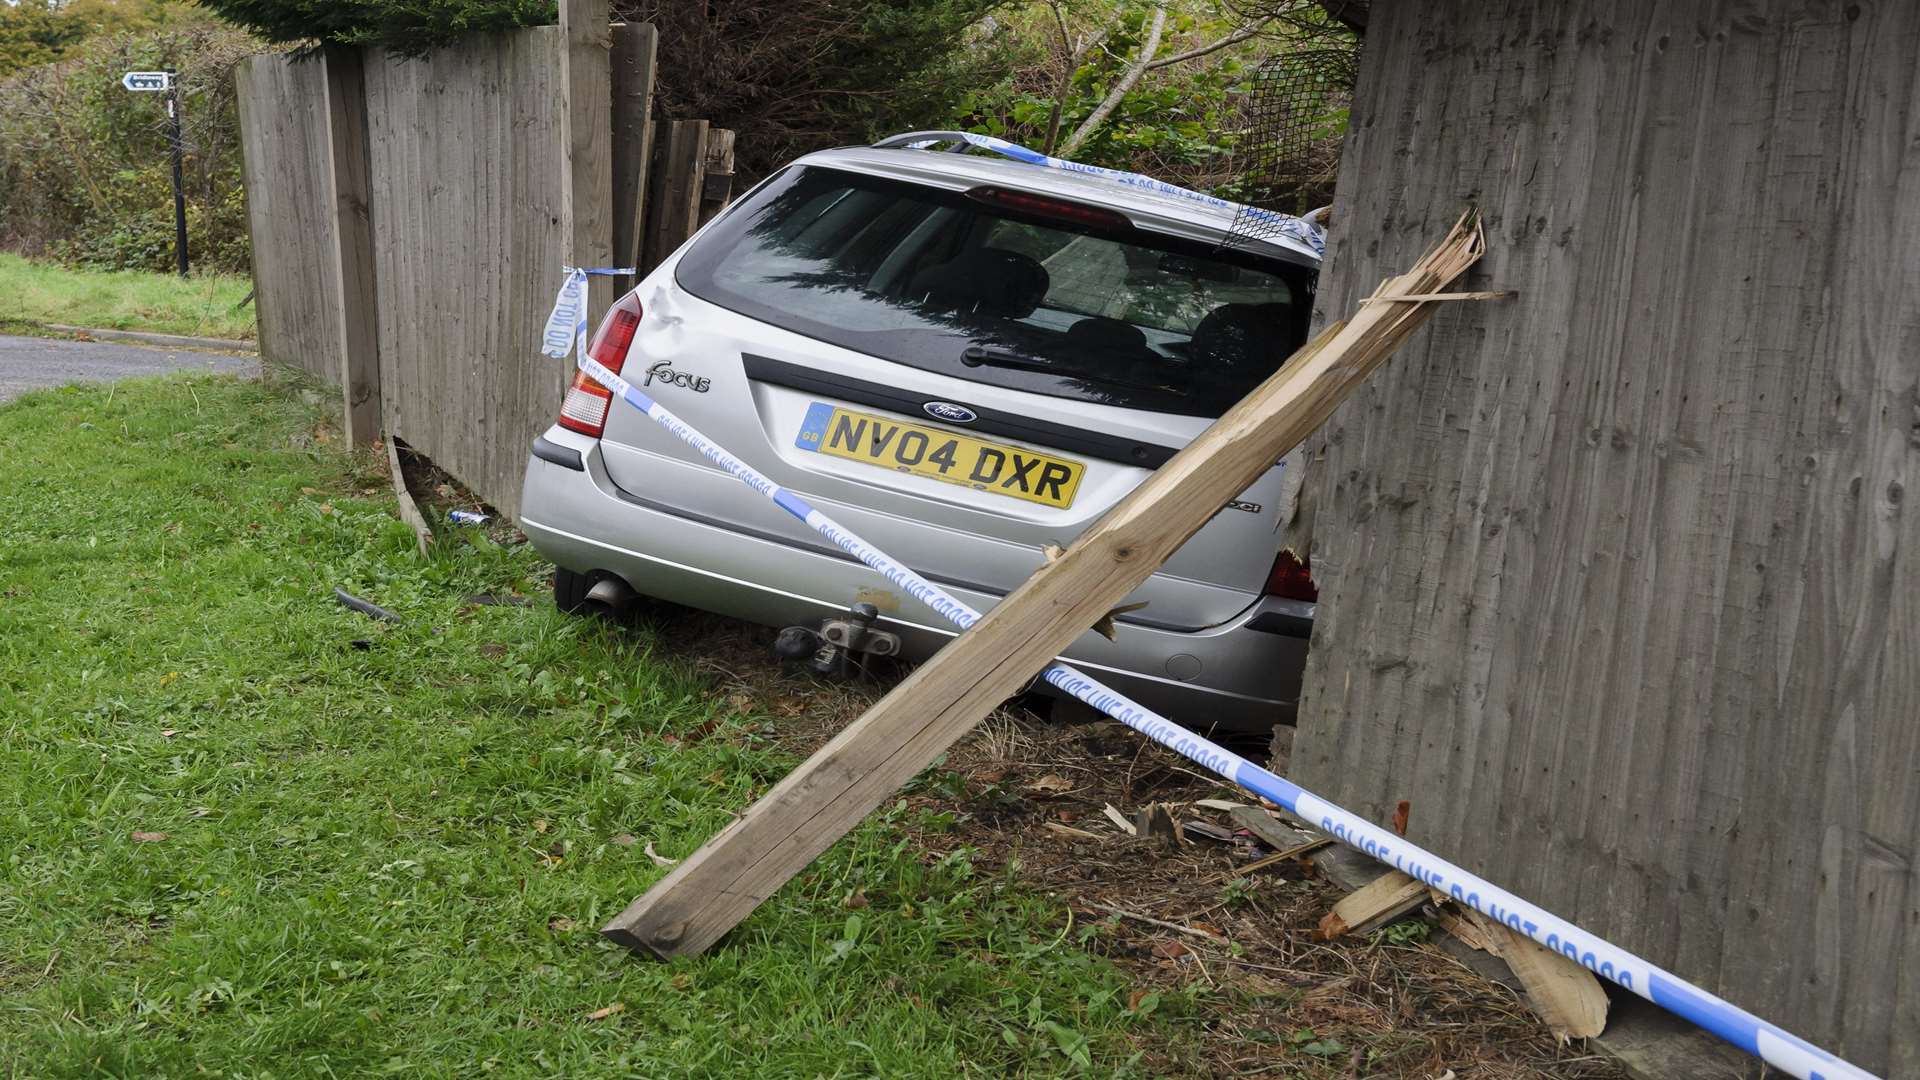 The car crashed through a garden fence